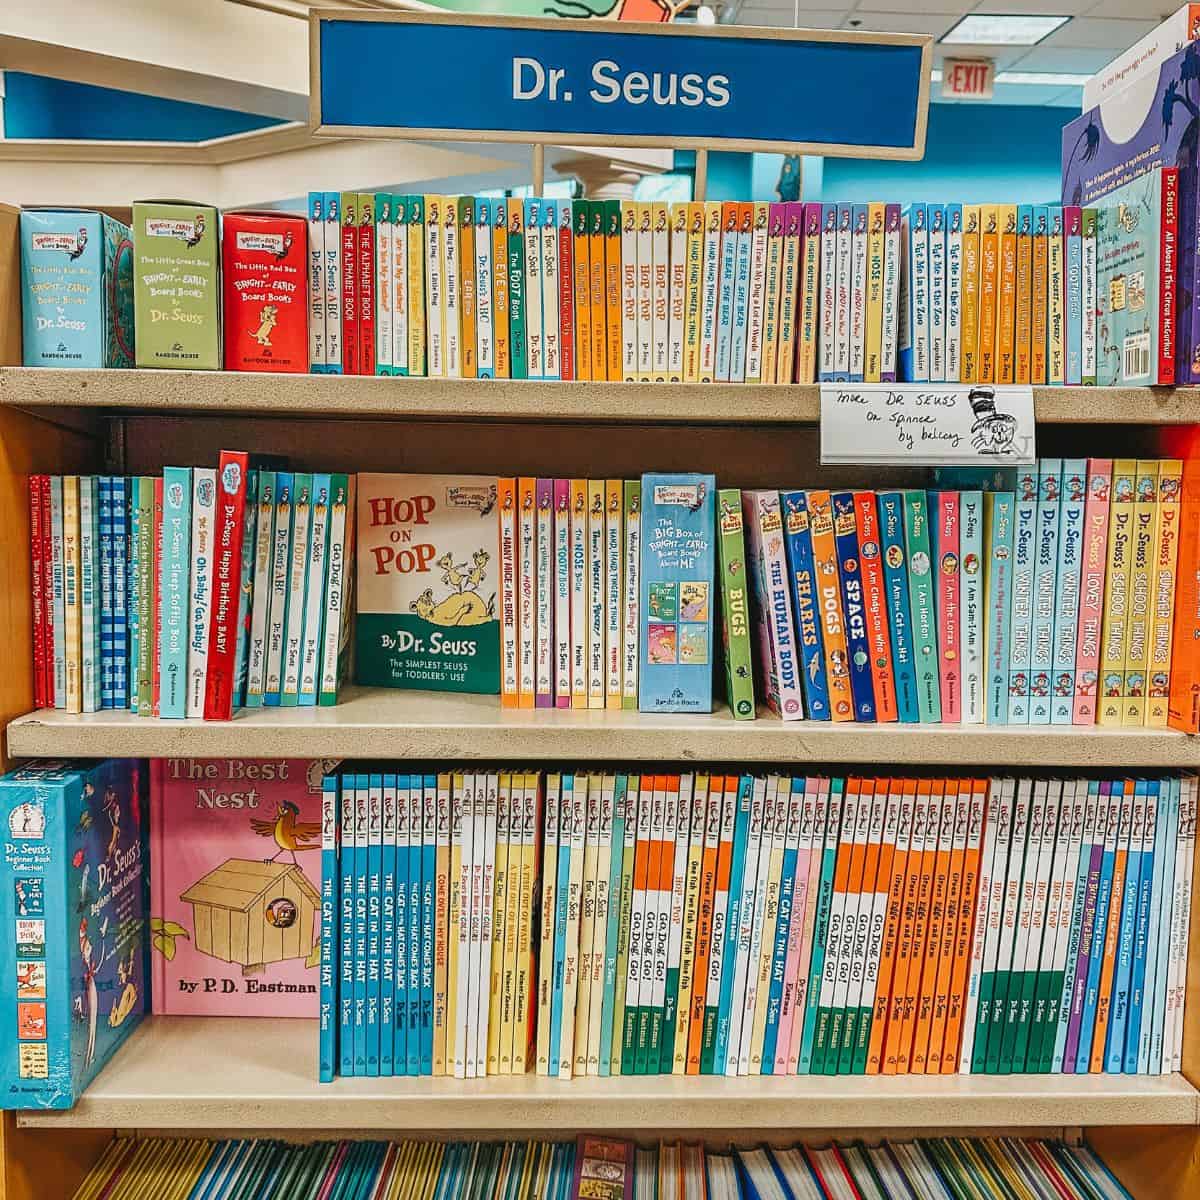 Dr Seuss books on bookshelves.